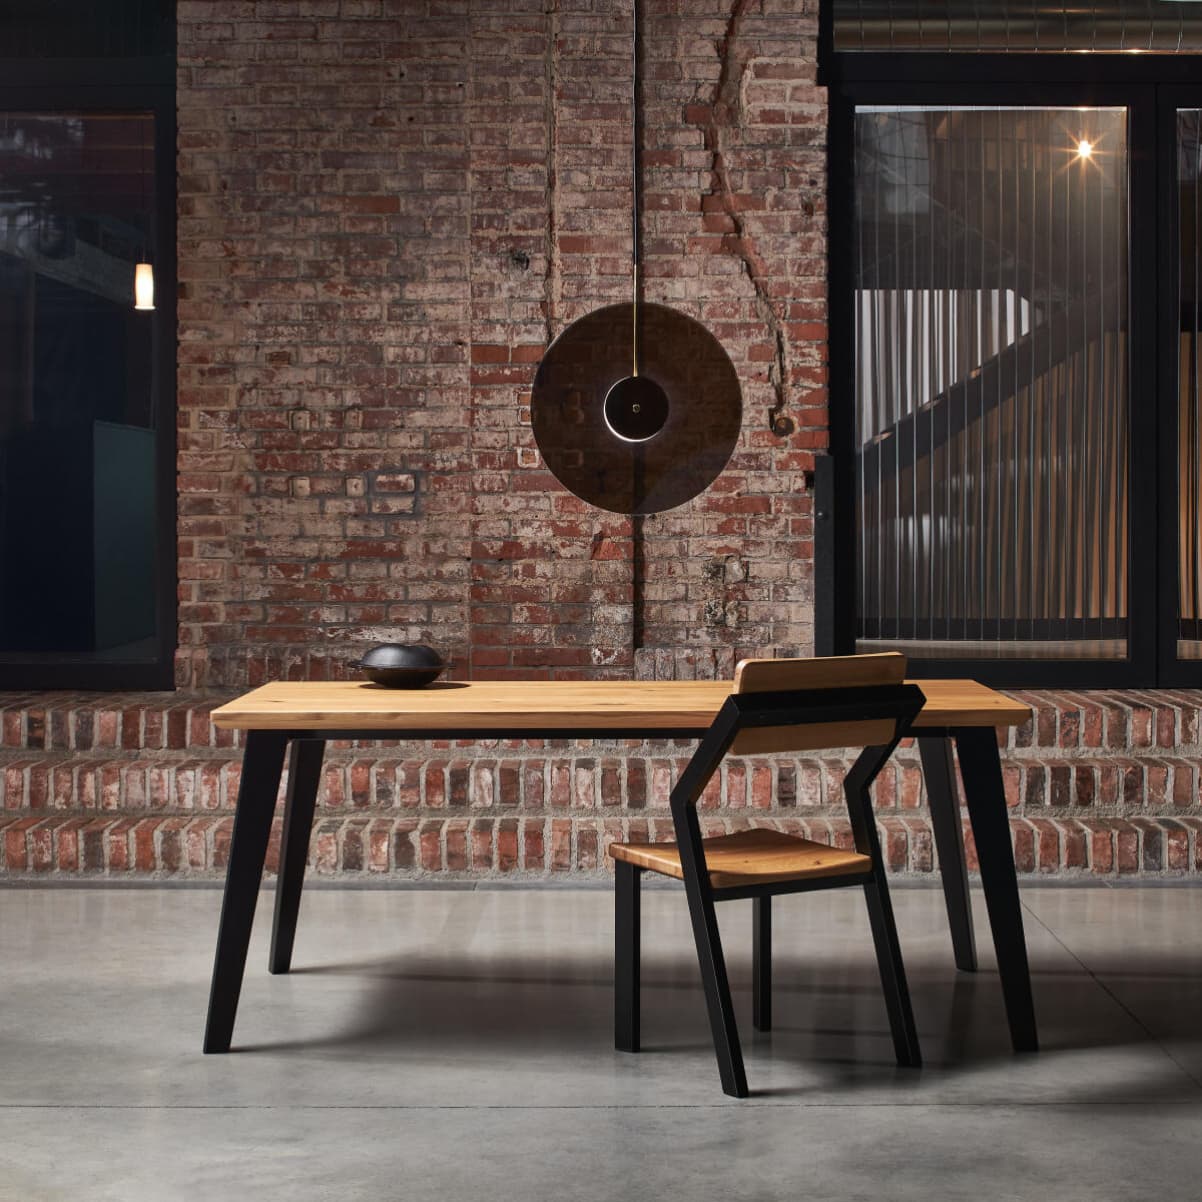 Designový jídelní stůl s kovovou židlí v moderním industriálním stylu.